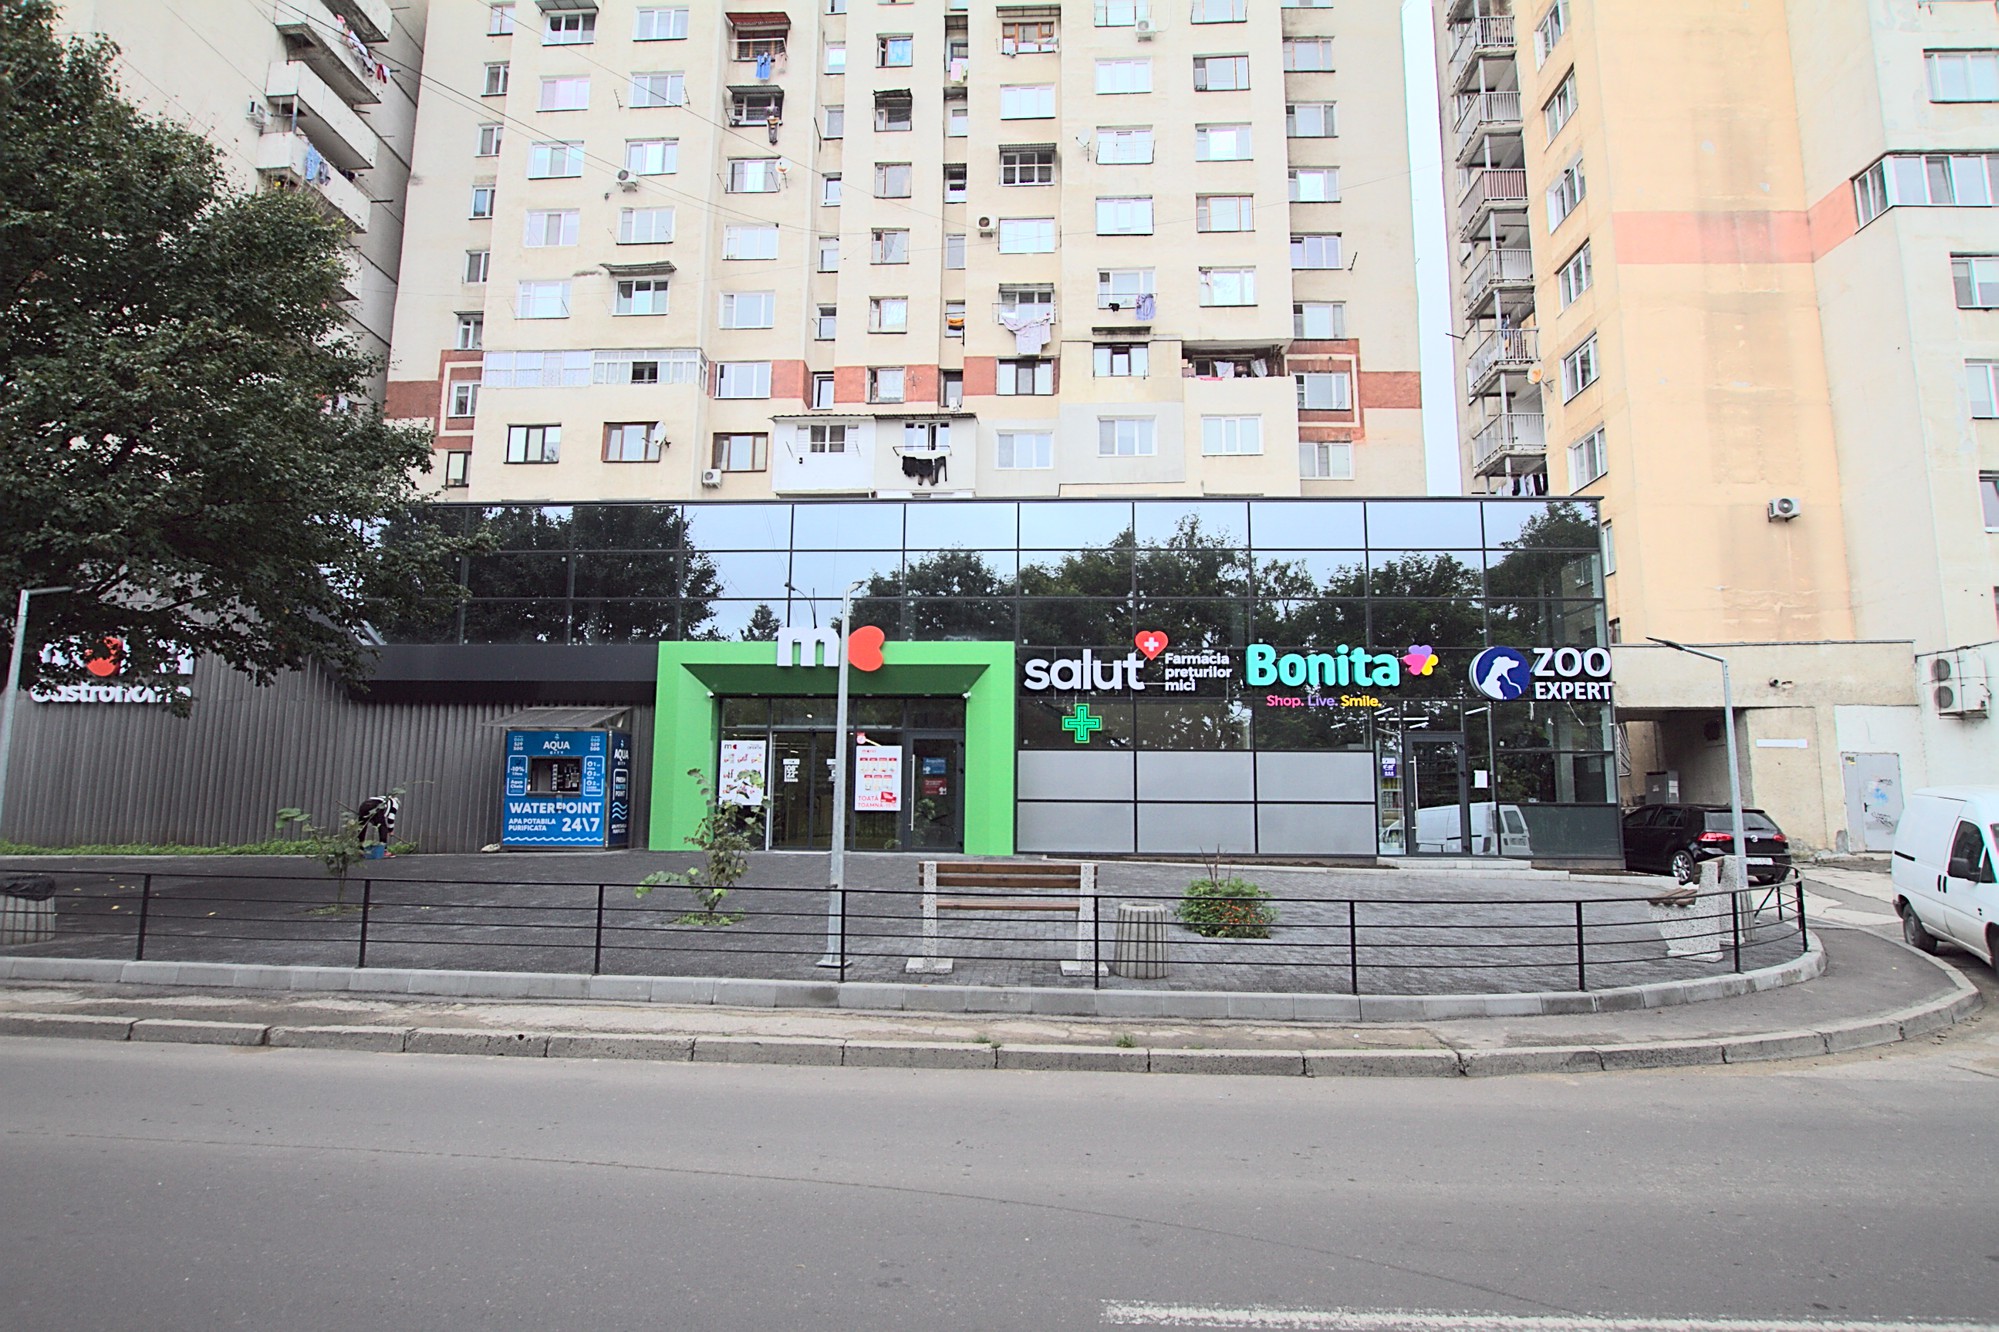 1 комната в аренду в Кишиневе - Chisinau, E. Coca 17